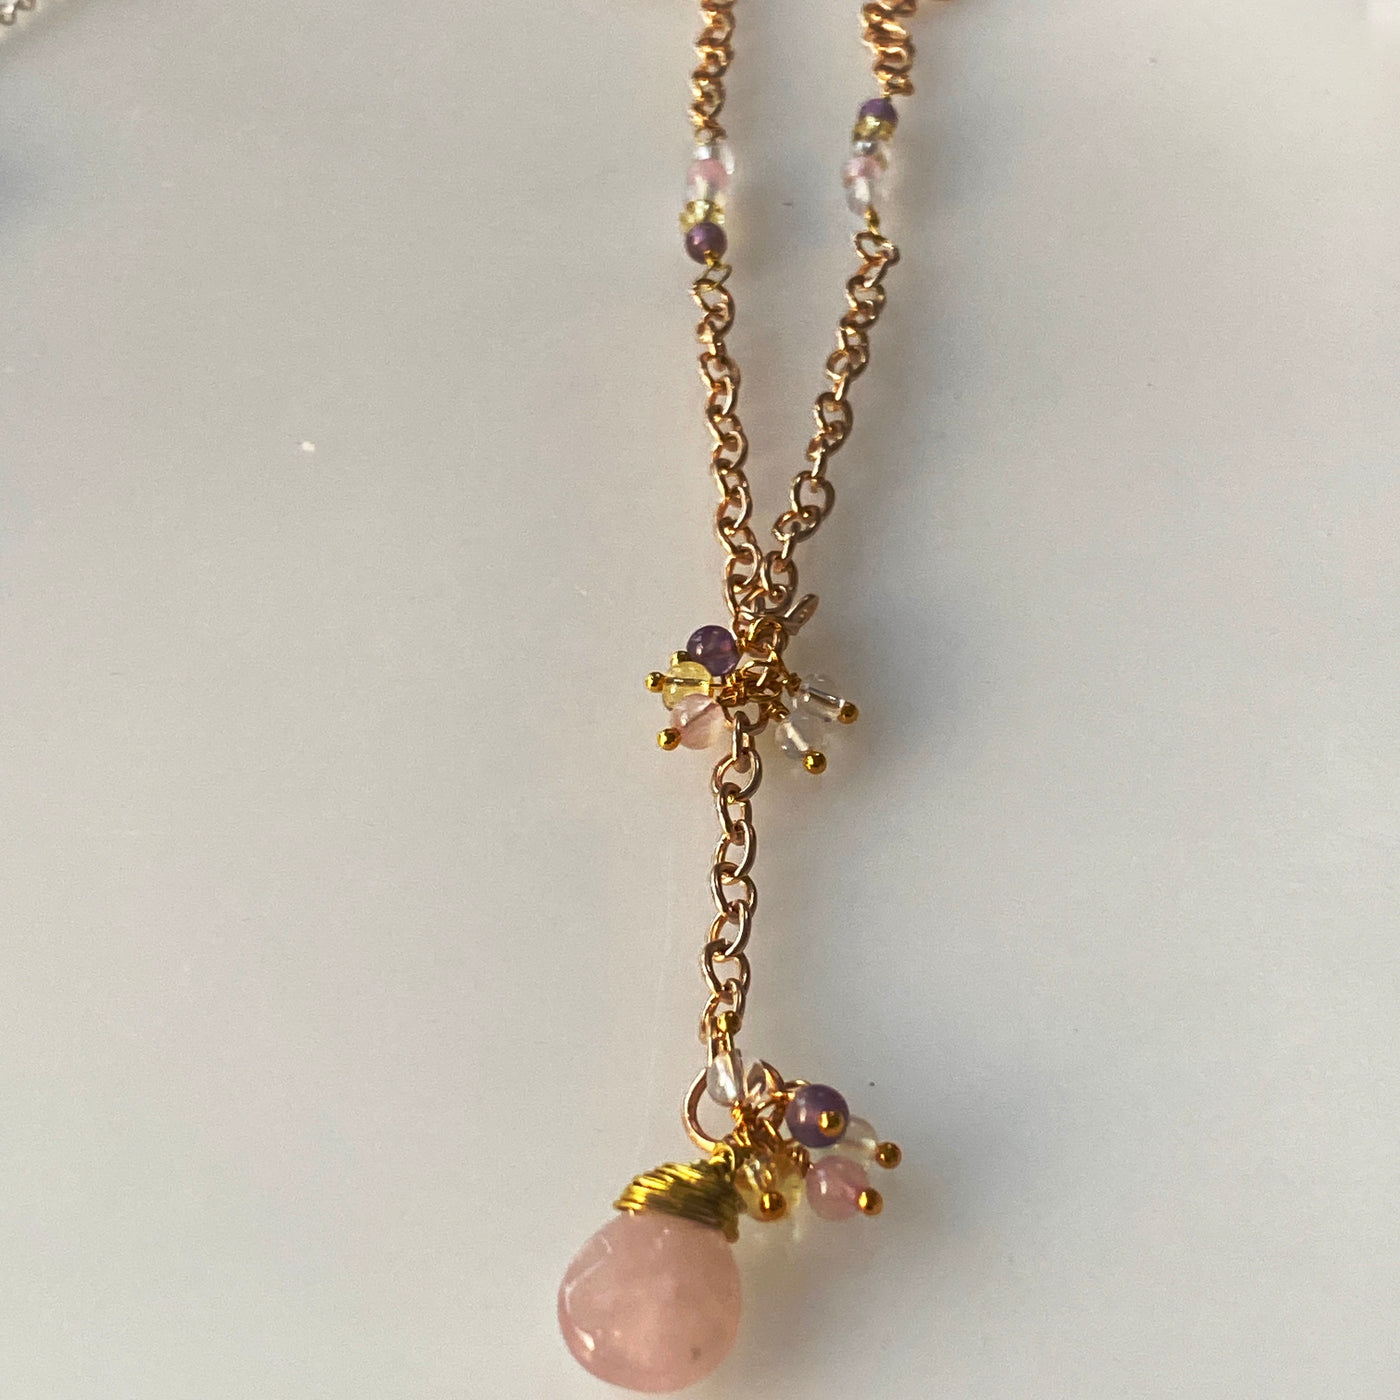 Halskette: Kirschblüten-Rosenquarz, Citrin-Amethyst, Opalith und weißer Quarz in Kupferdraht